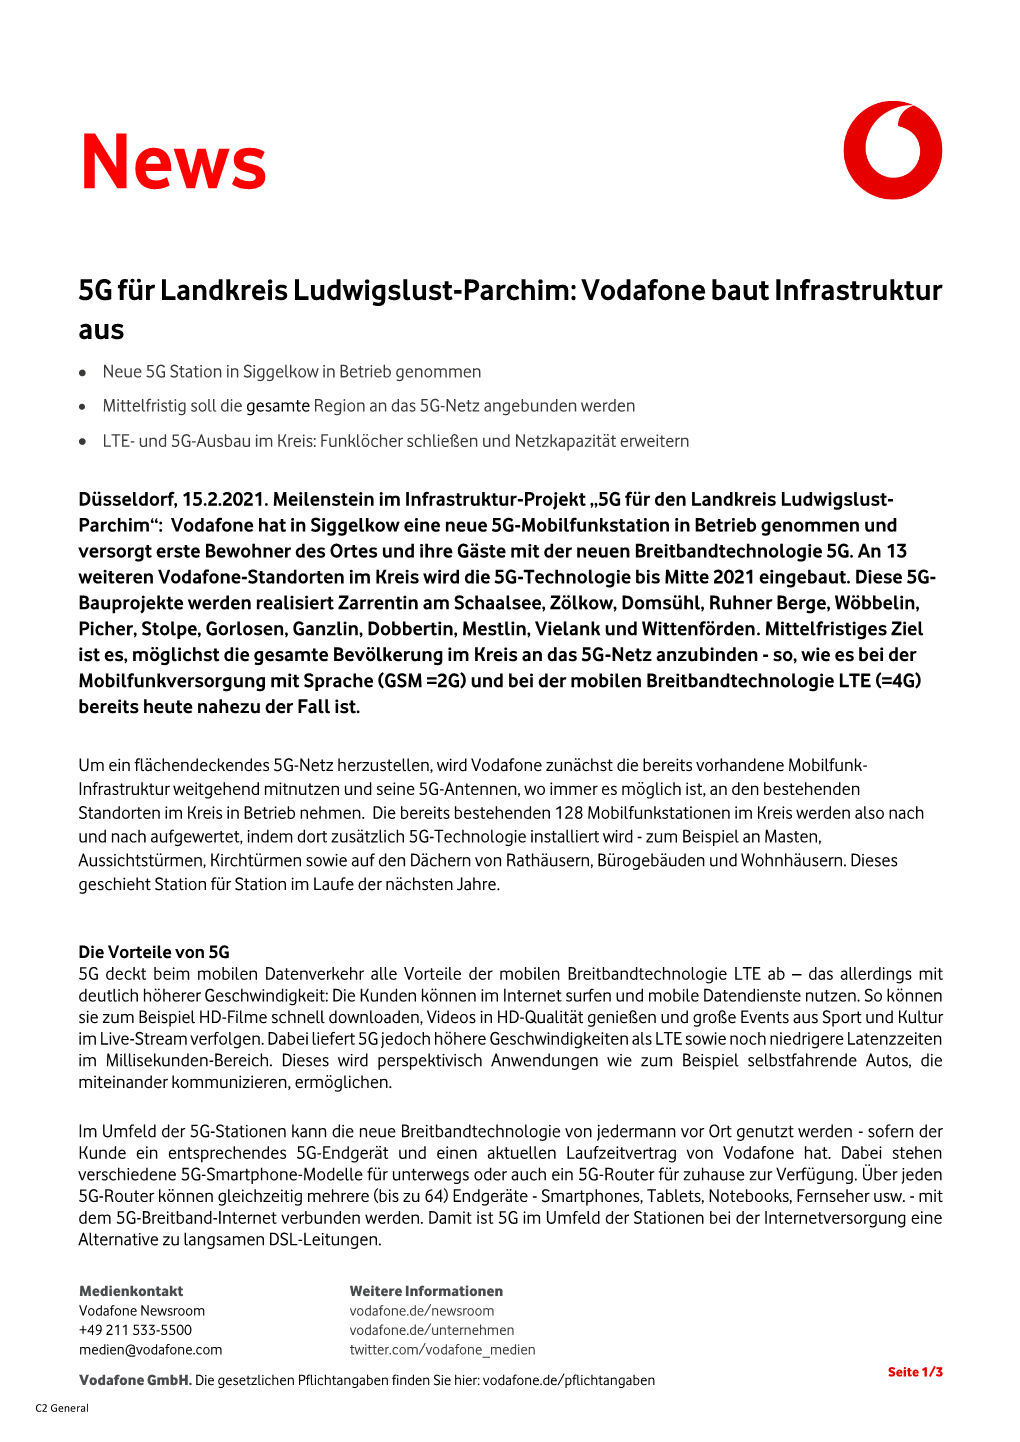 5G Für Landkreis Ludwigslust-Parchim: Vodafone